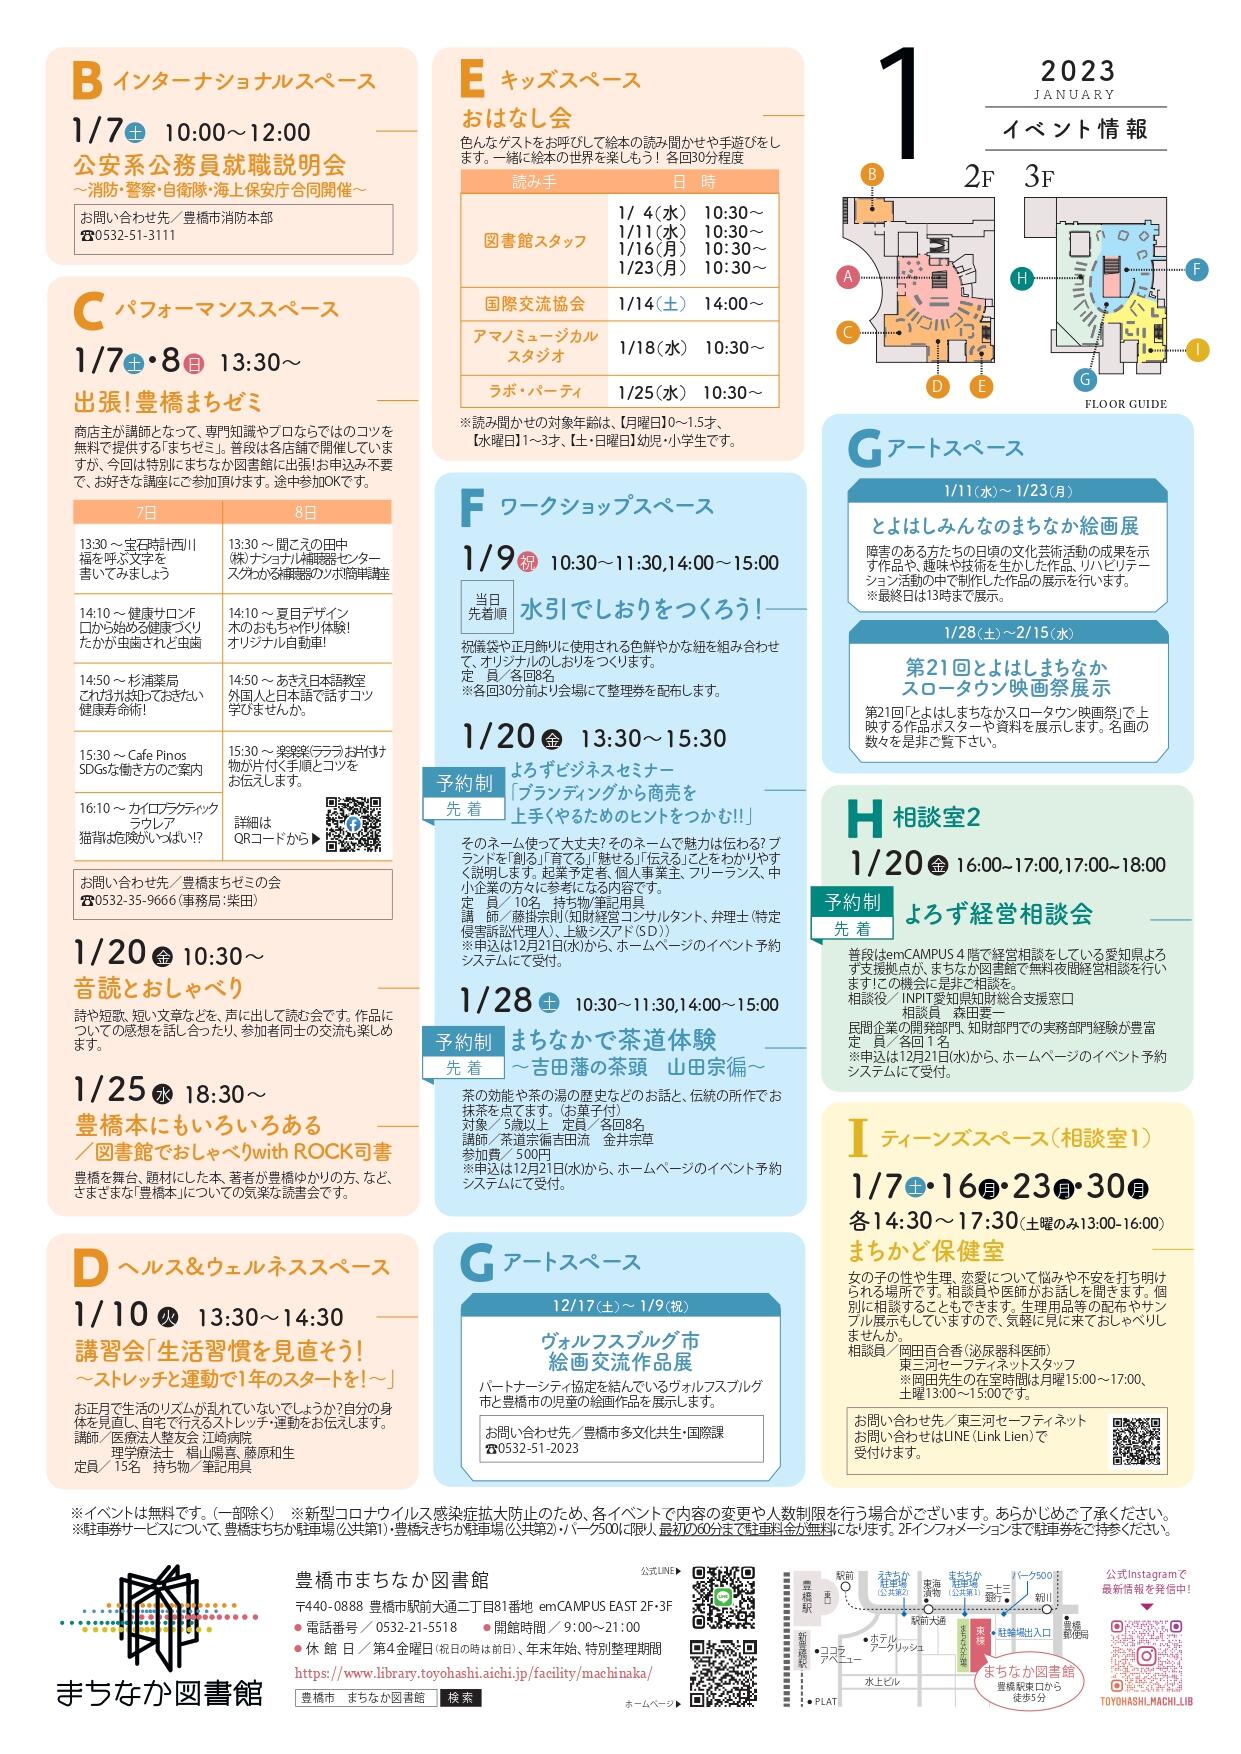 https://www.library.toyohashi.aichi.jp/facility/machinaka/event/76574b74f35755dd5751a11772cbd3ea.jpg